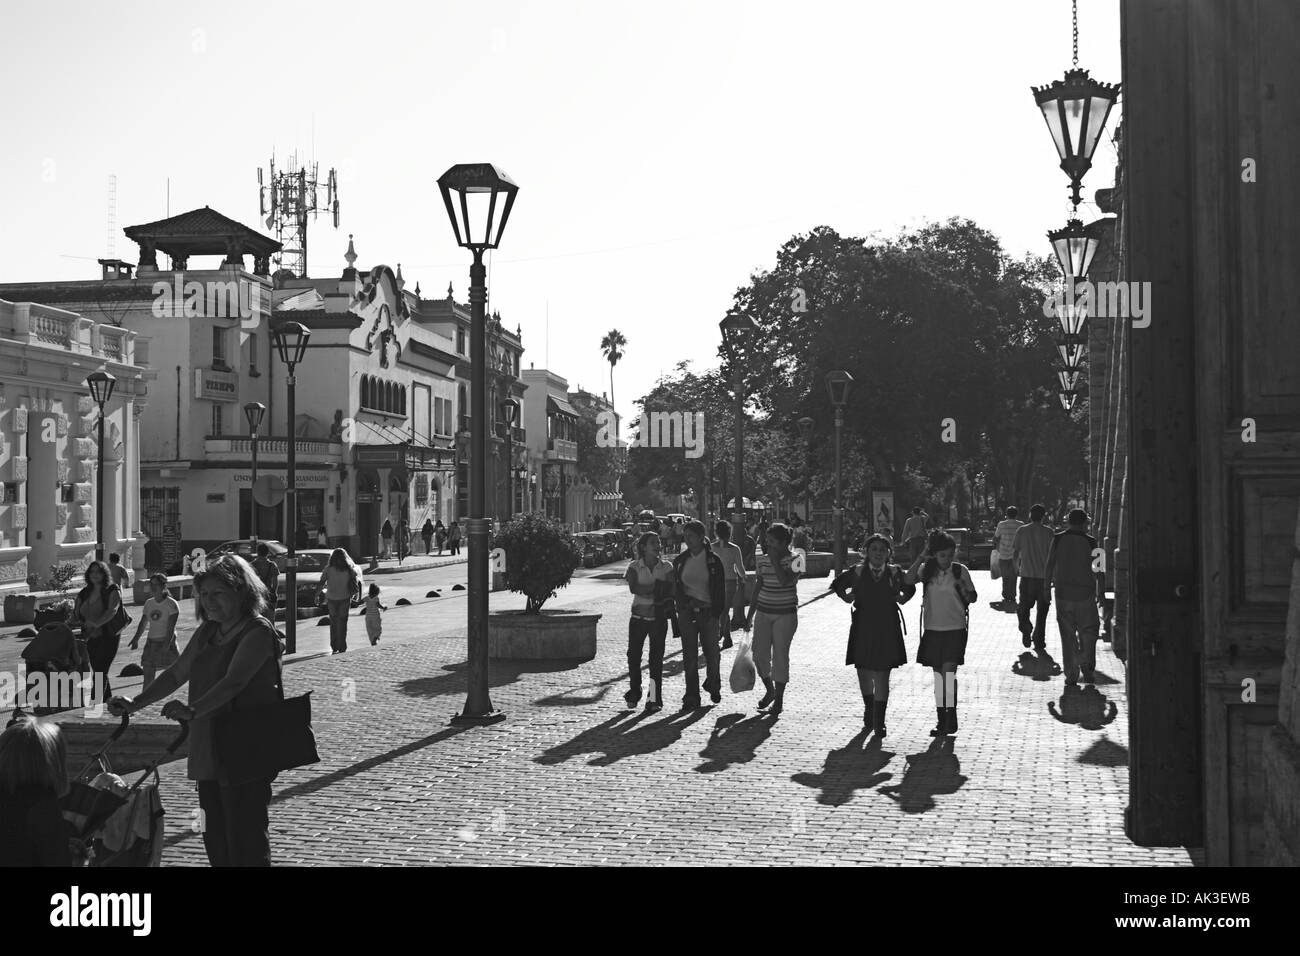 Street scene in La Serena Stock Photo